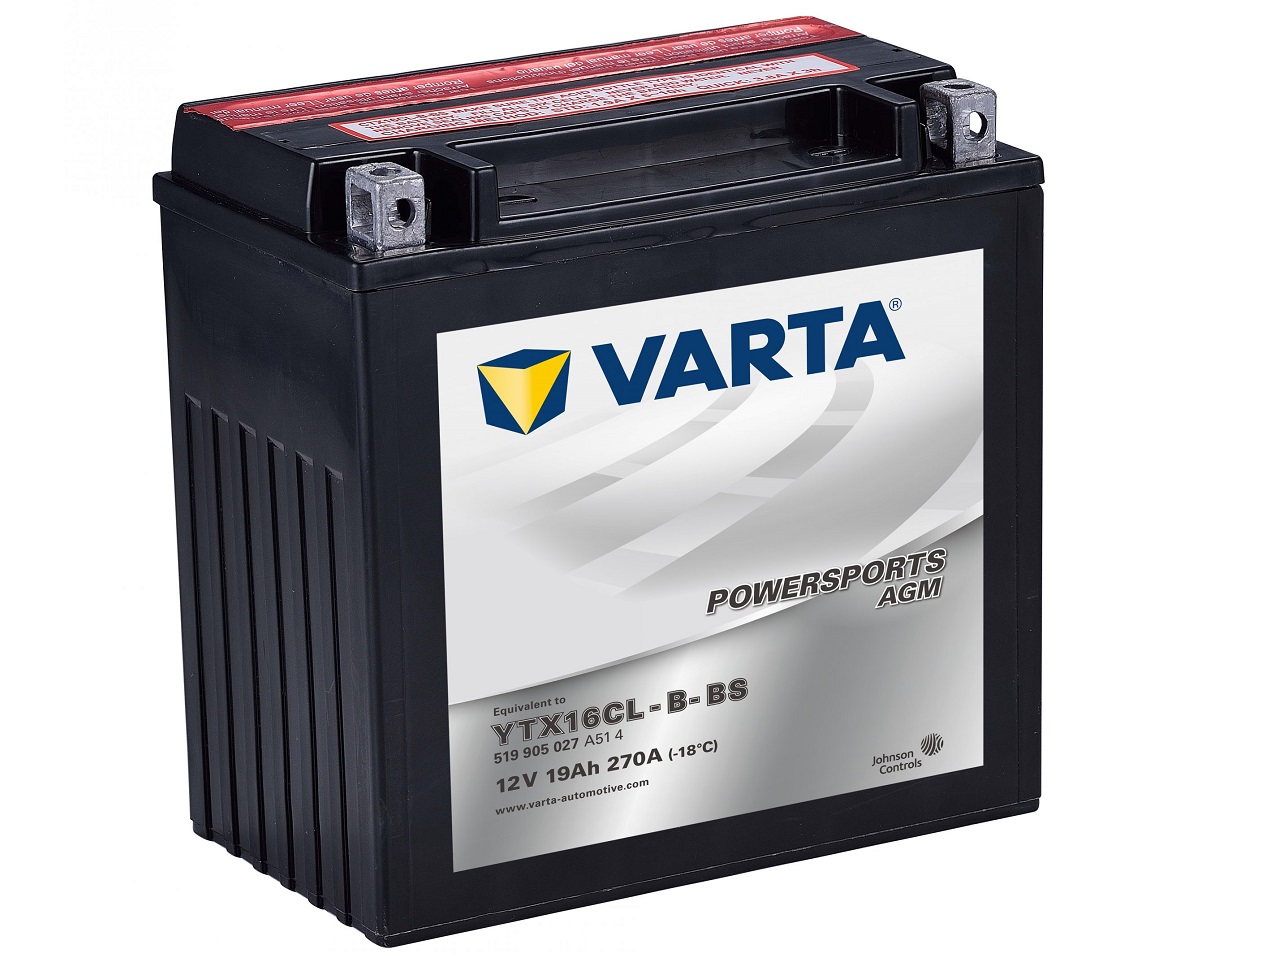 Varta YTX16CL-B-BS